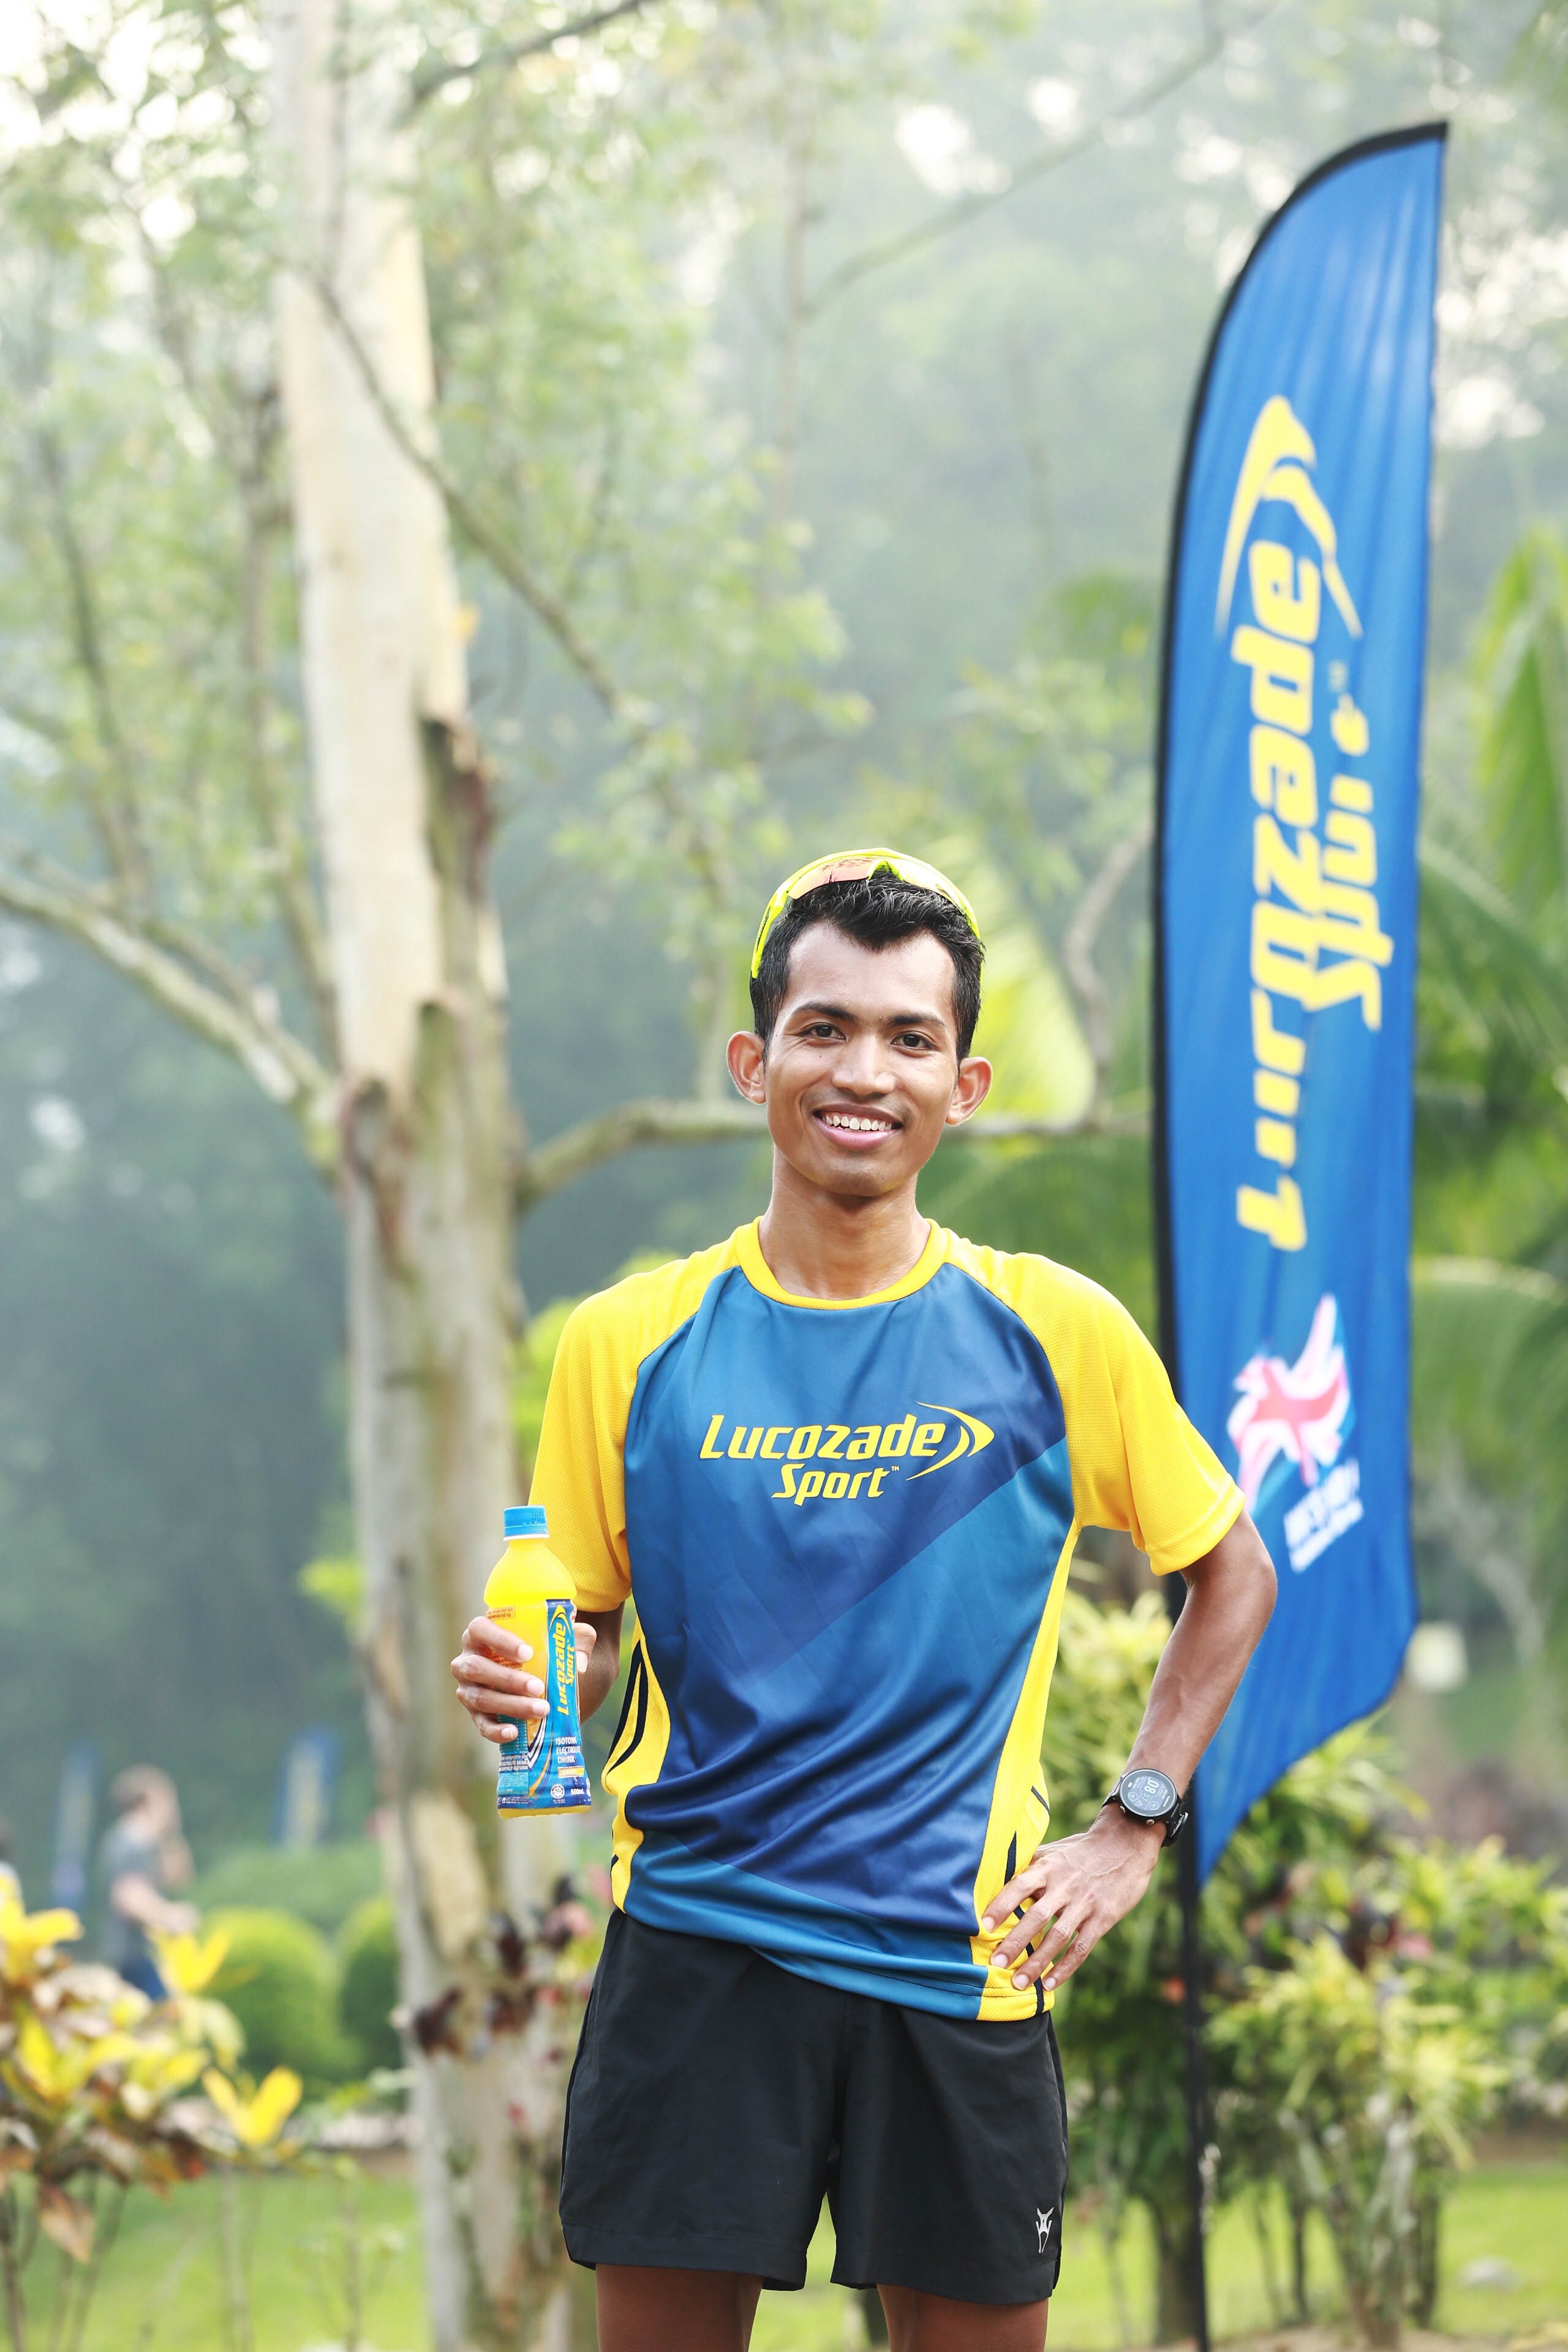 mizuno run 2016 malaysia